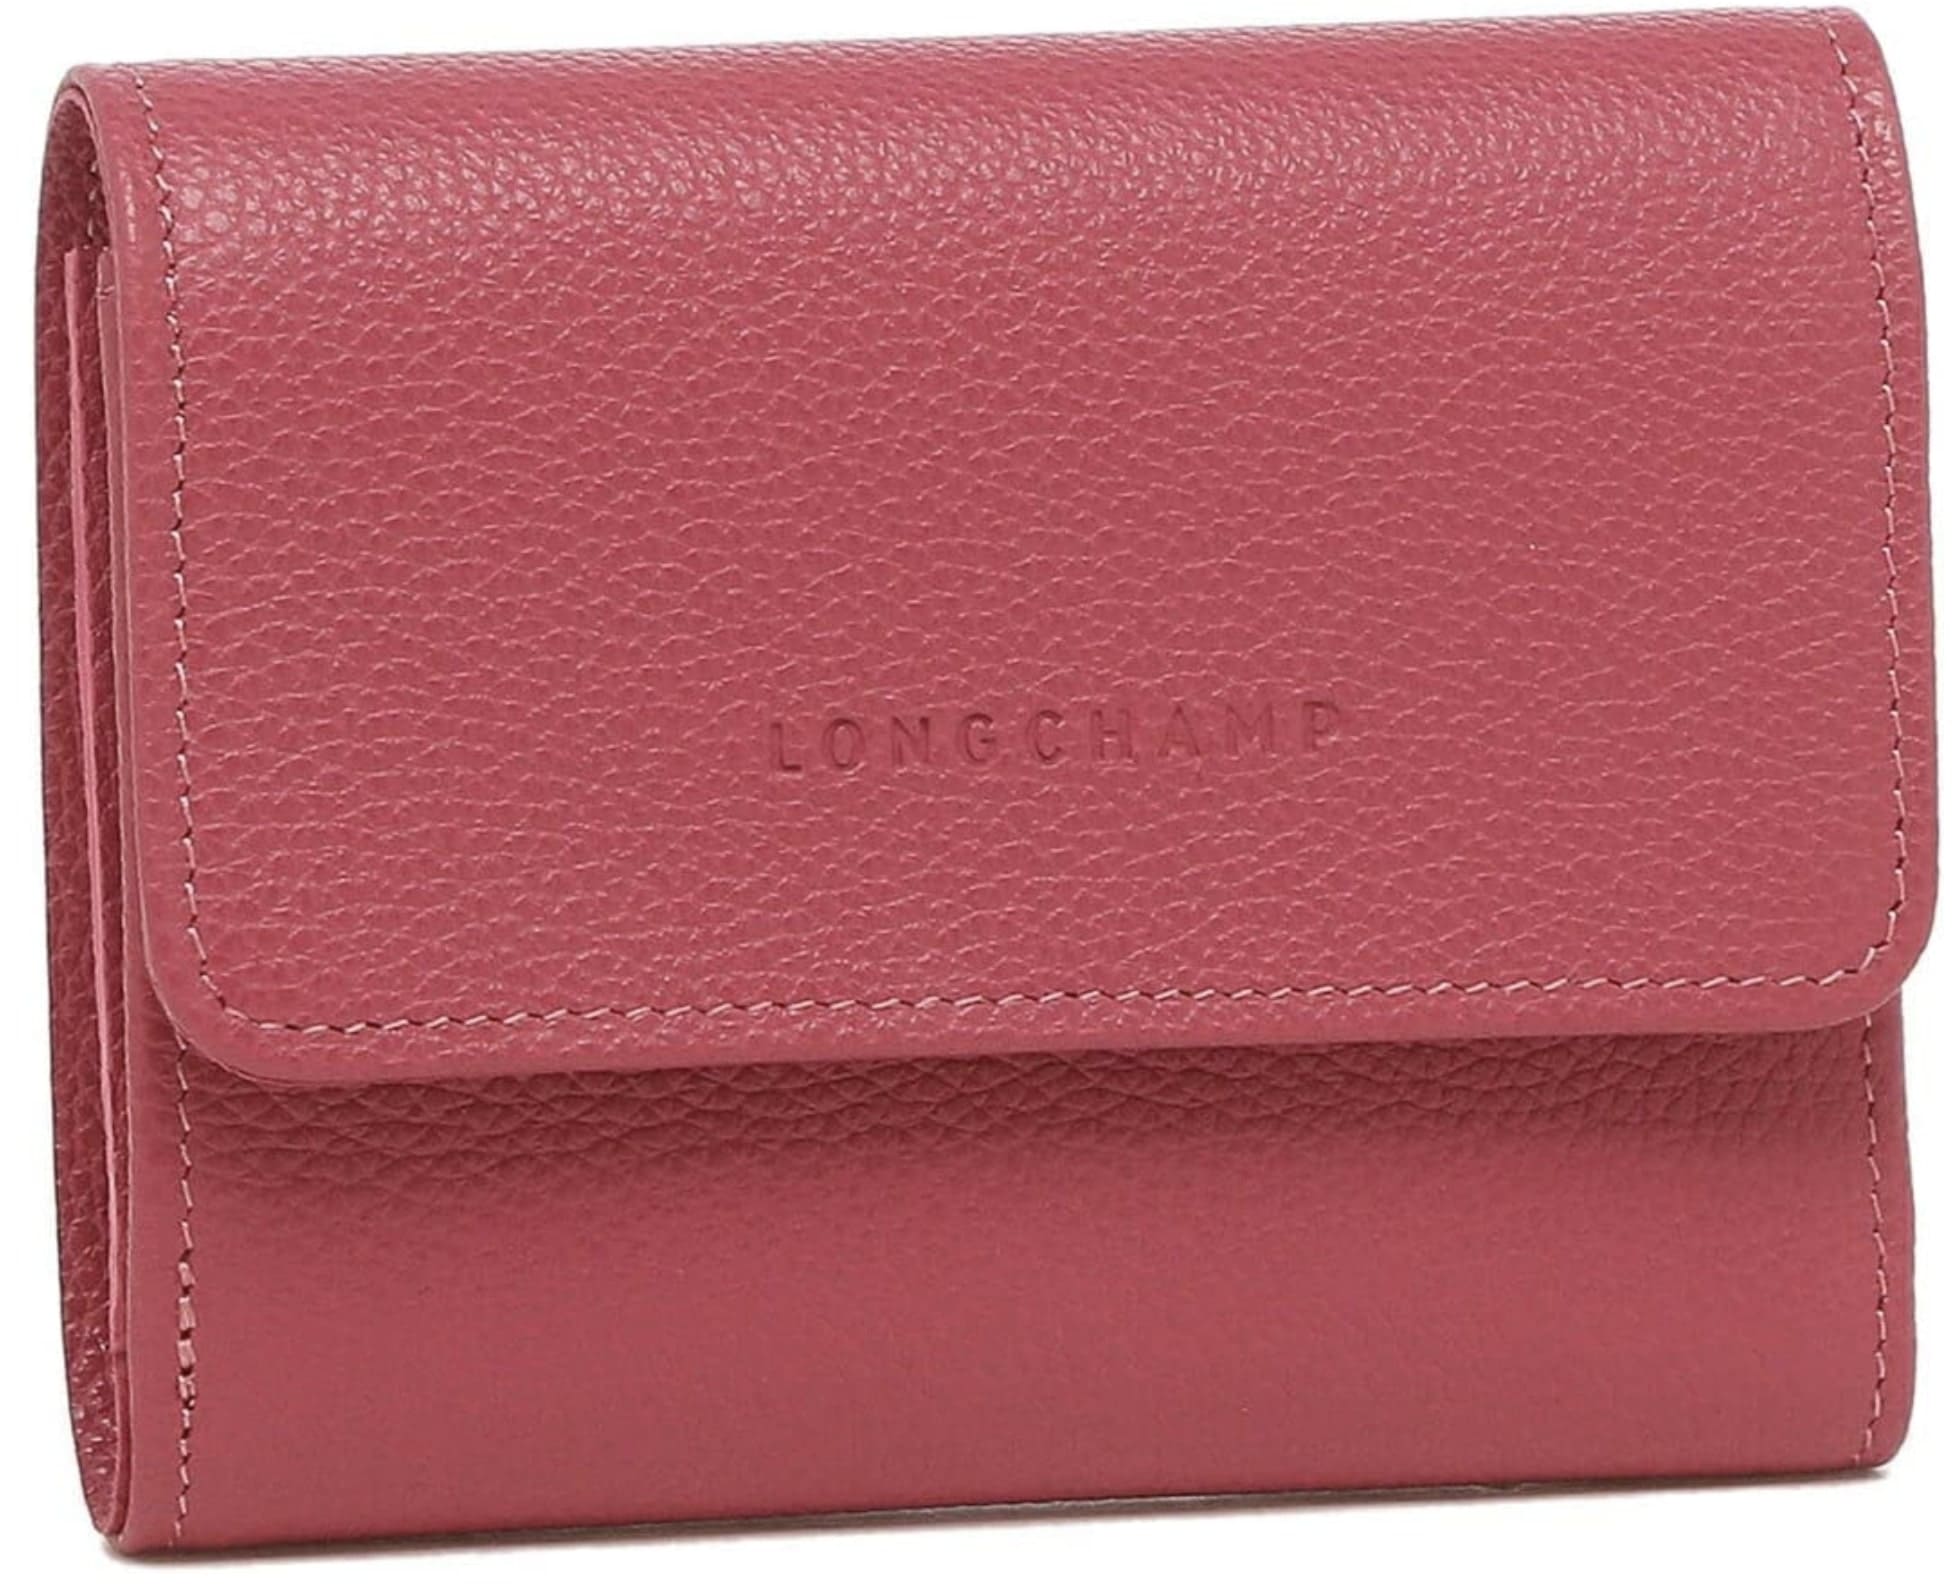 ロンシャン(LONGCHAMP) 人気 三つ折り財布 レディース フローネ COMPACT WALLET